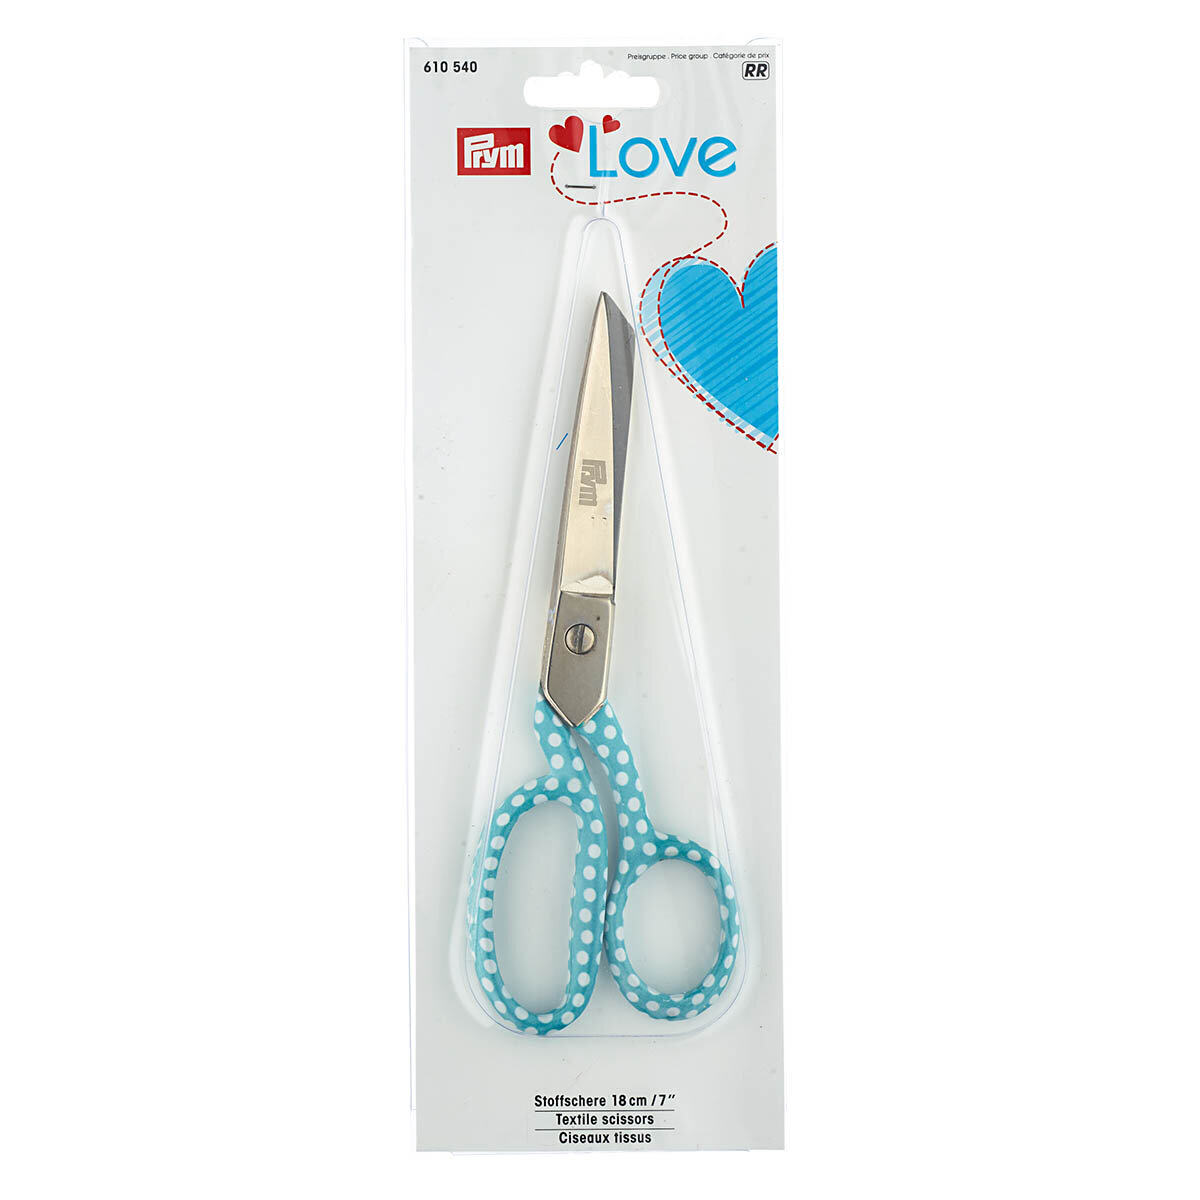 Ножницы для рукоделия и шитья Love, 18 см, Prym, 610540